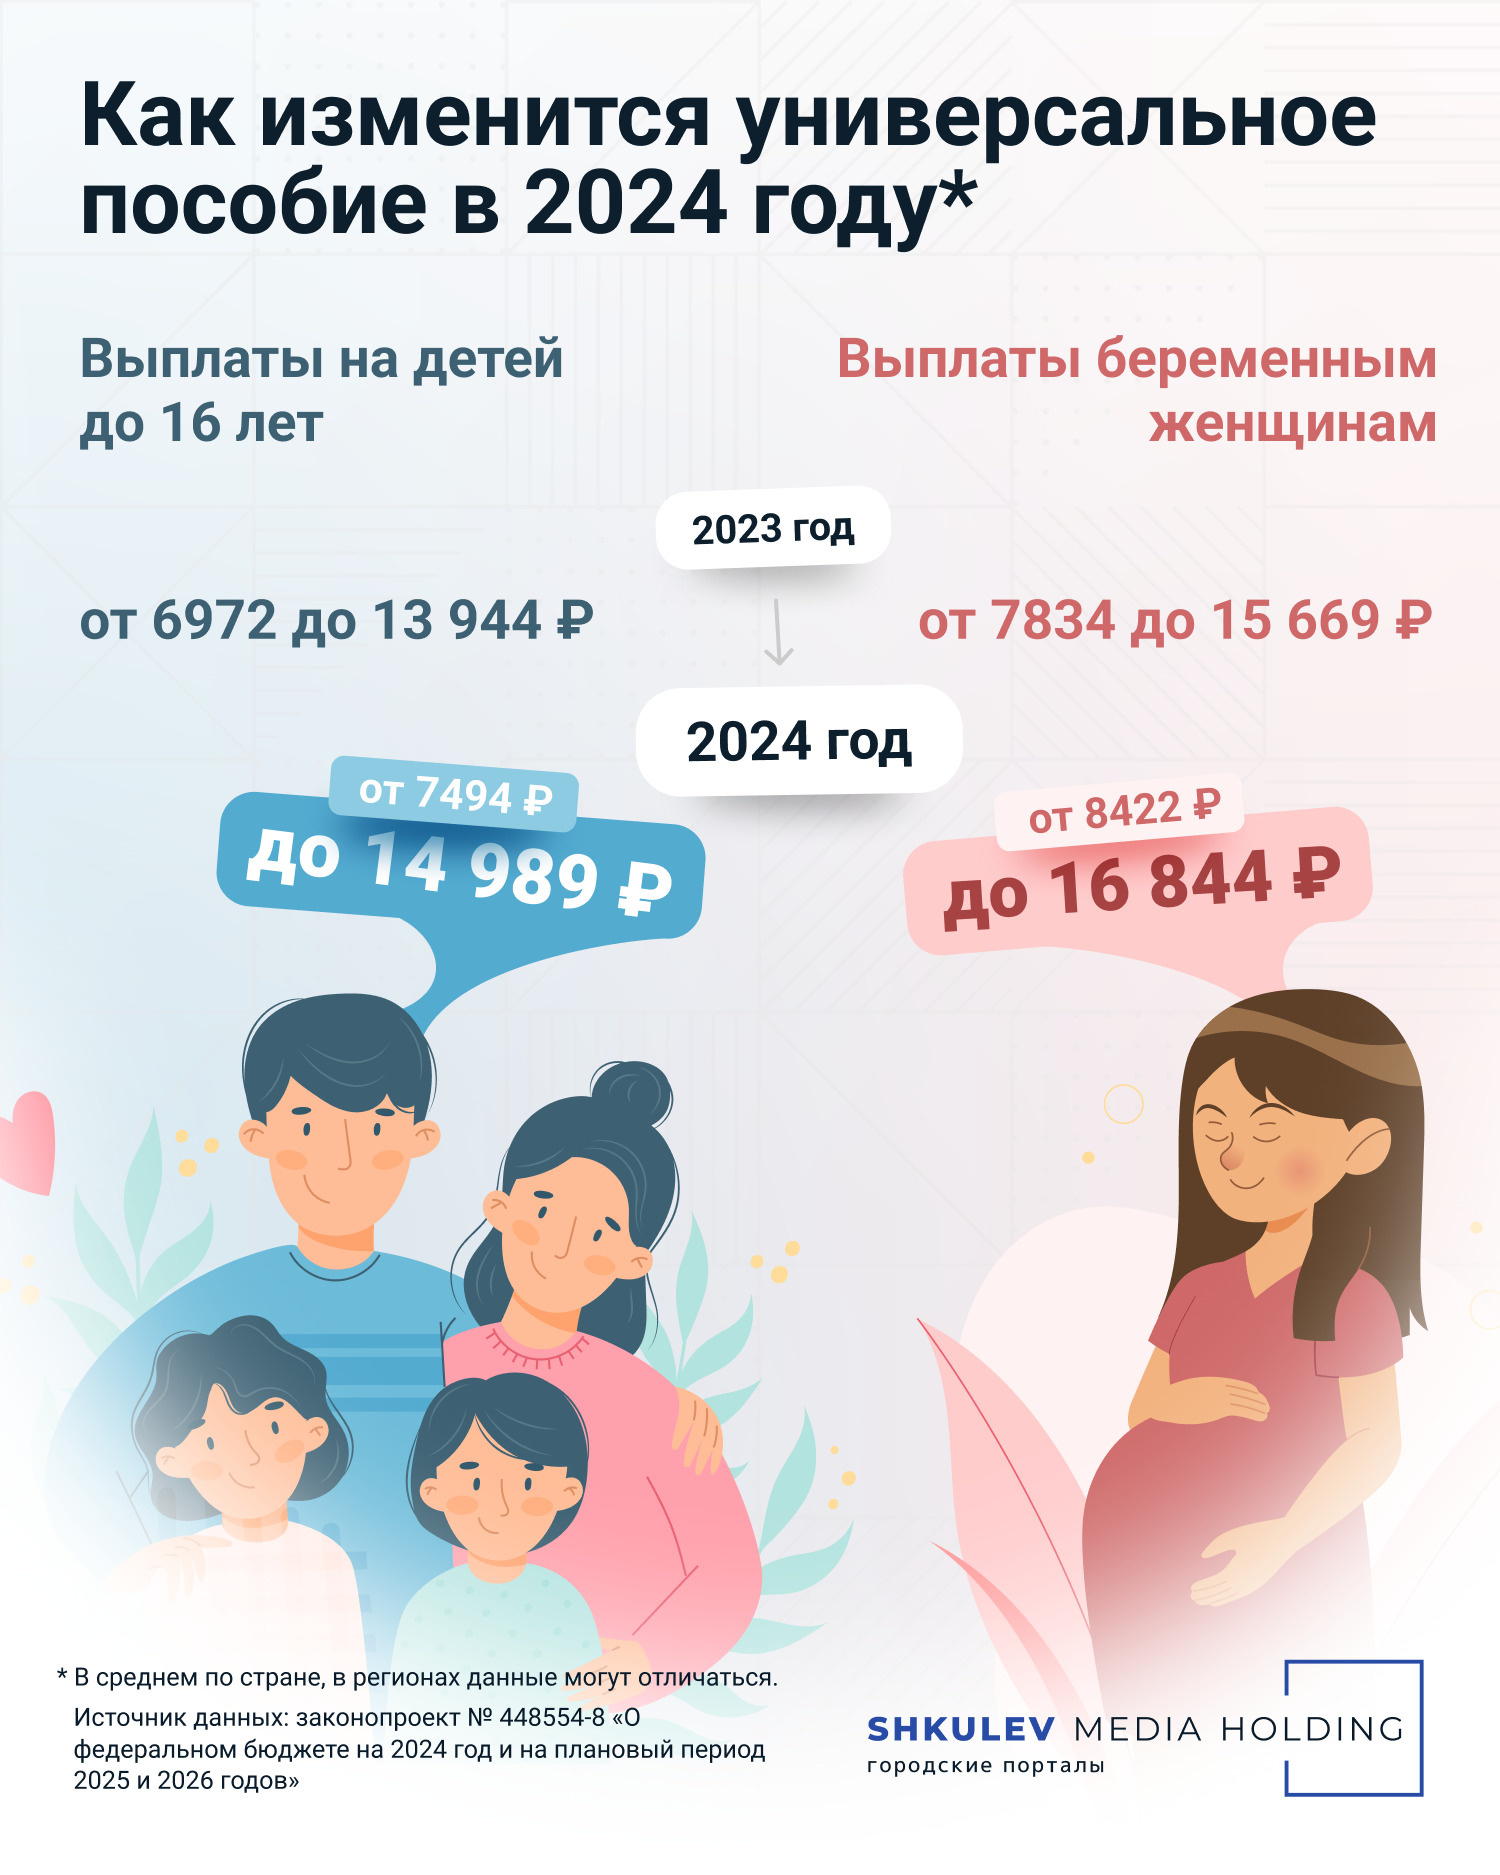 Размер универсального пособия на ребенка и пособия беременным в 2024 году -  28 ноября 2023 - НГС24